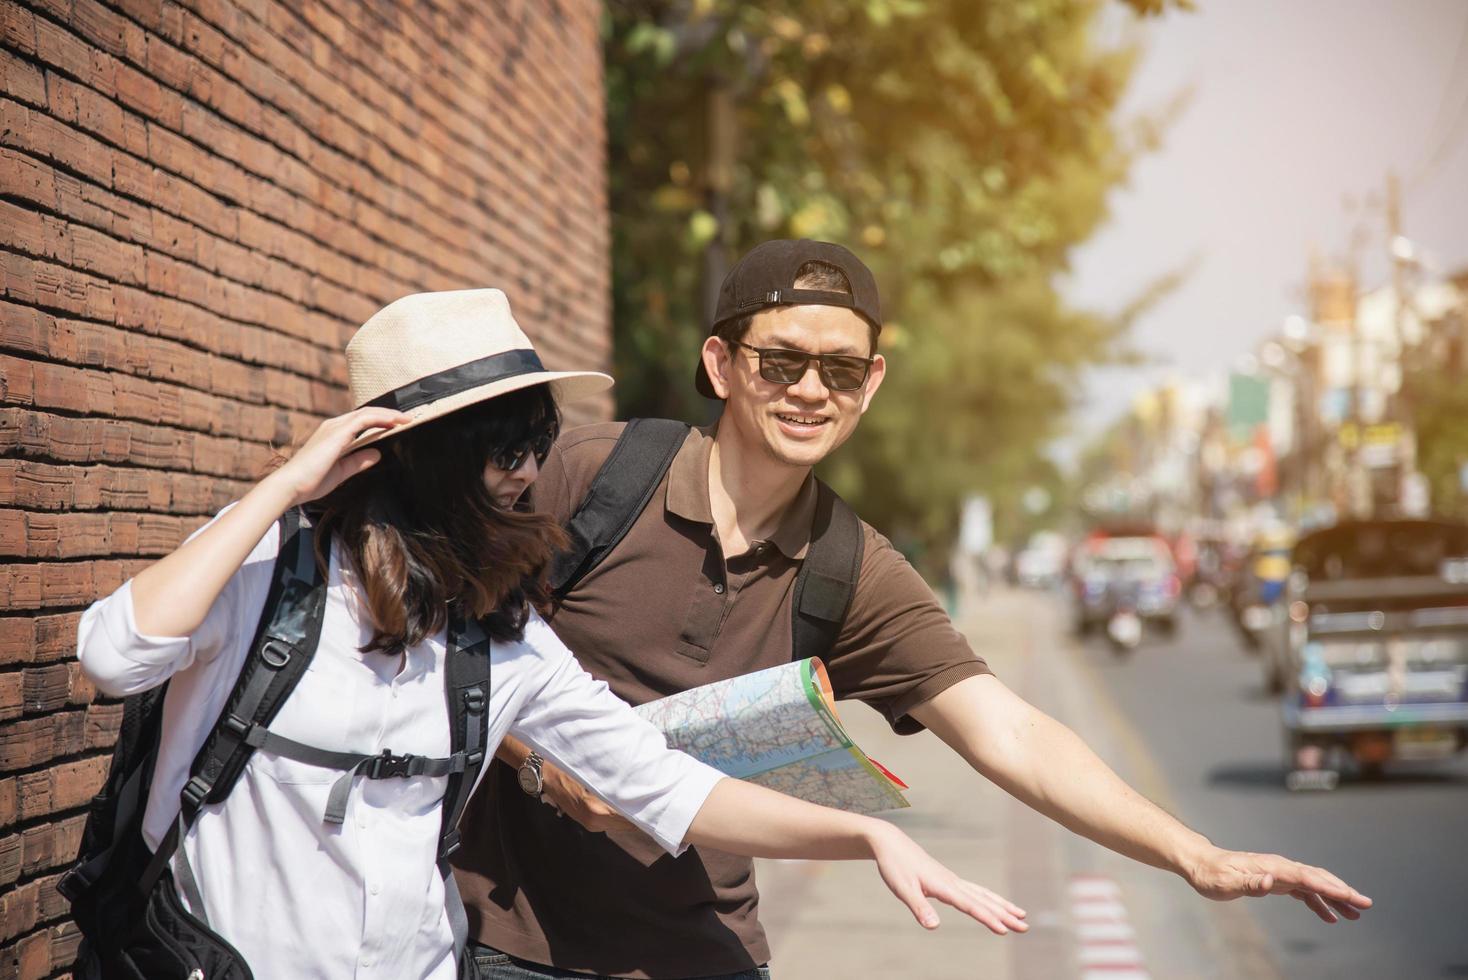 Aziatische rugzak paar toerist met stadsplattegrond oversteken van de weg - reizen mensen vakantie levensstijl concept foto